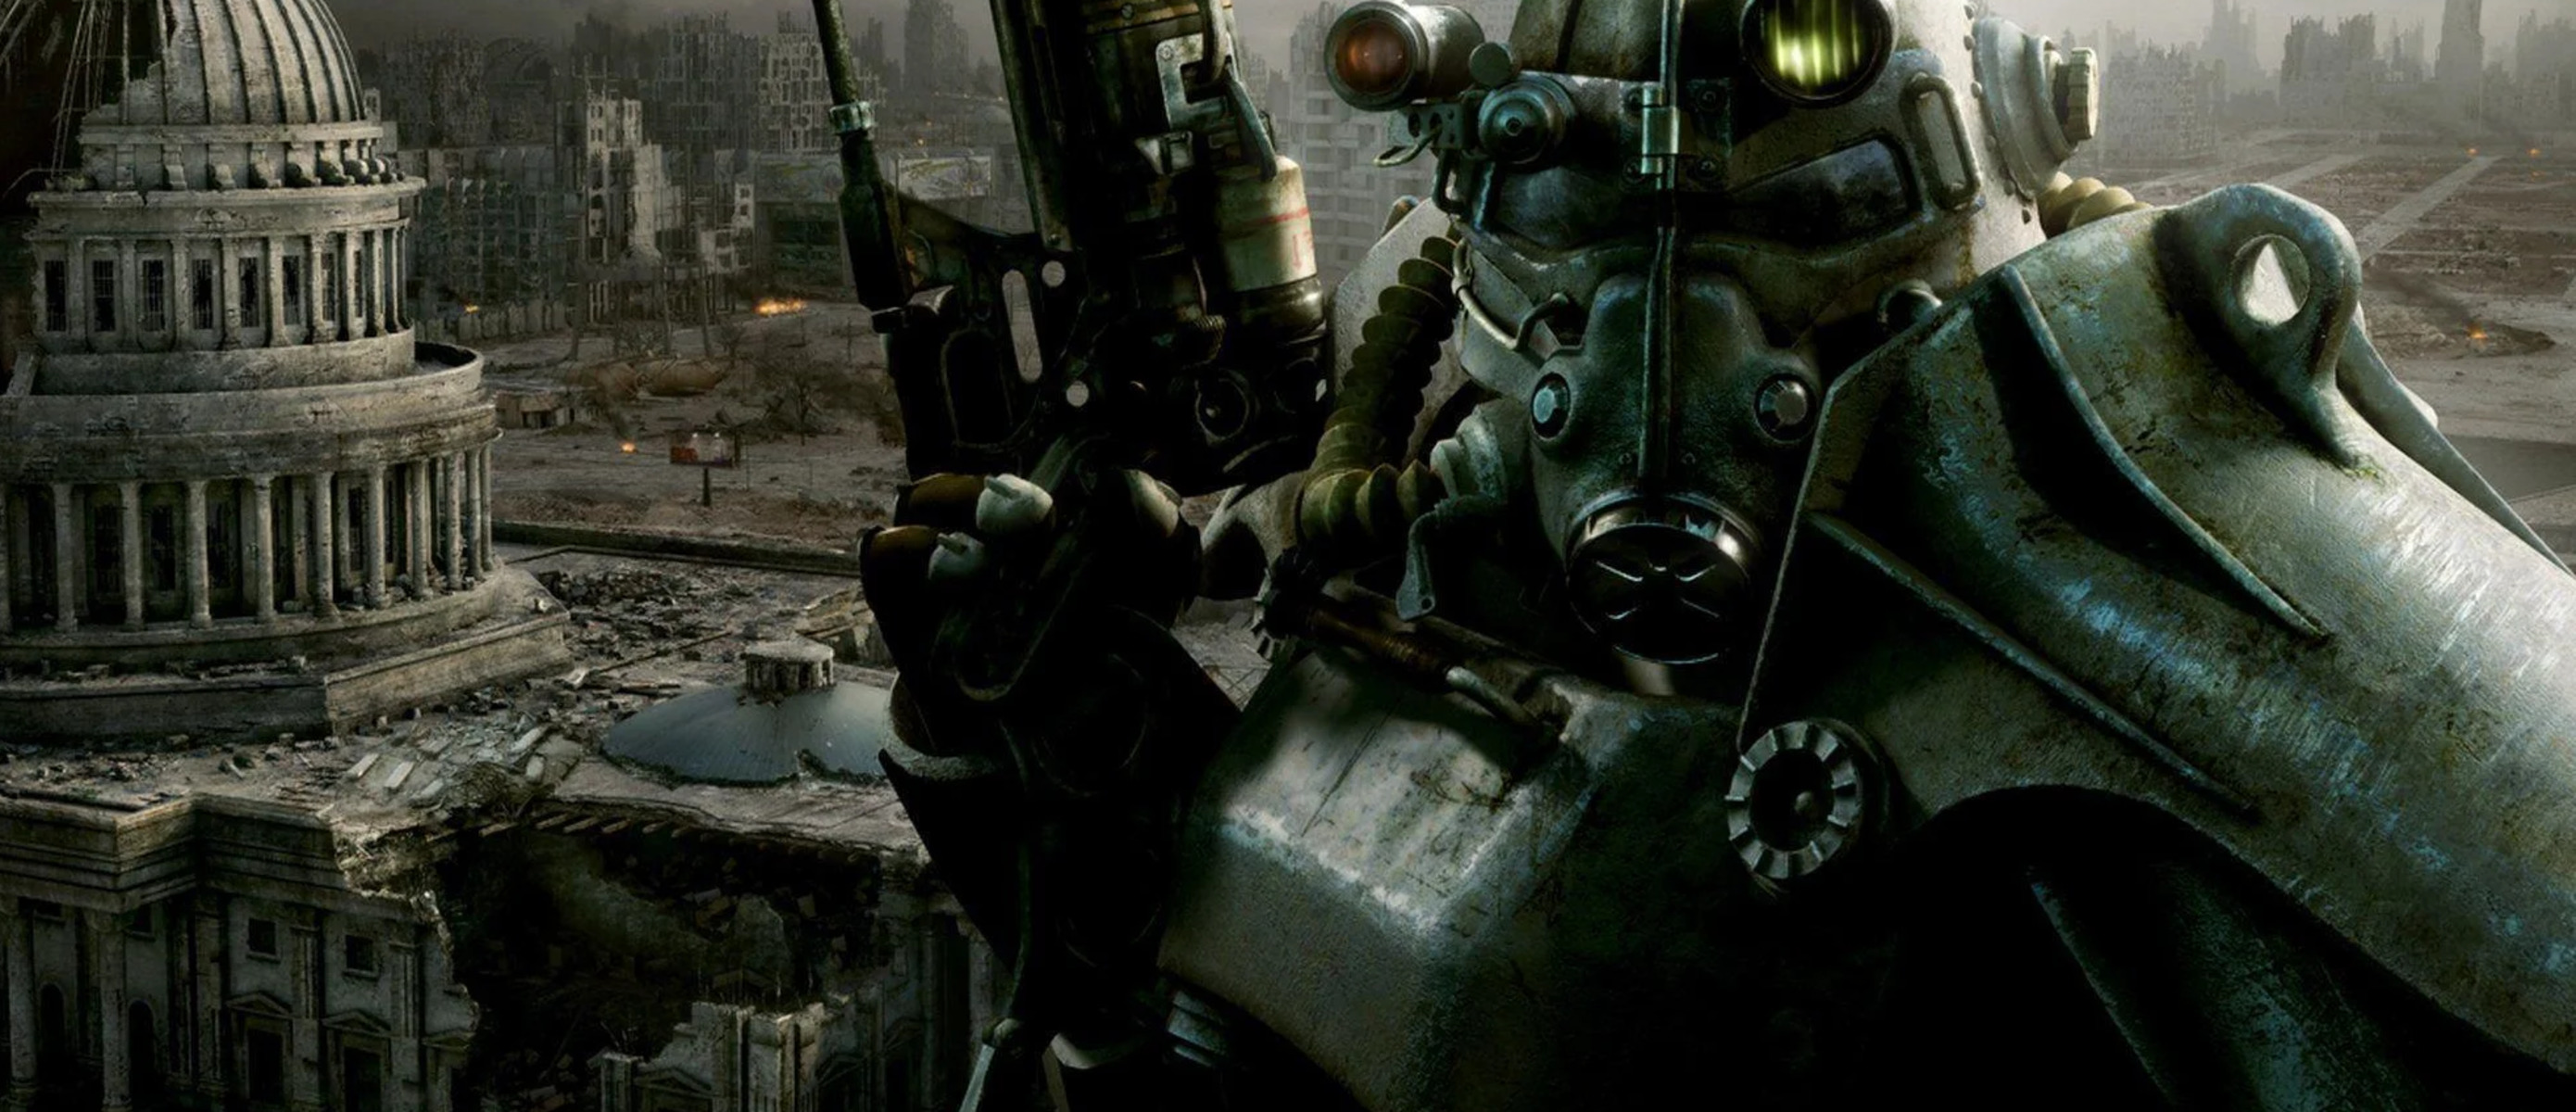 Fallout 3. Русификатор Fallout 3 Epic. Доктор Ливси Warhammer 40k. Русификатор fallout epic games